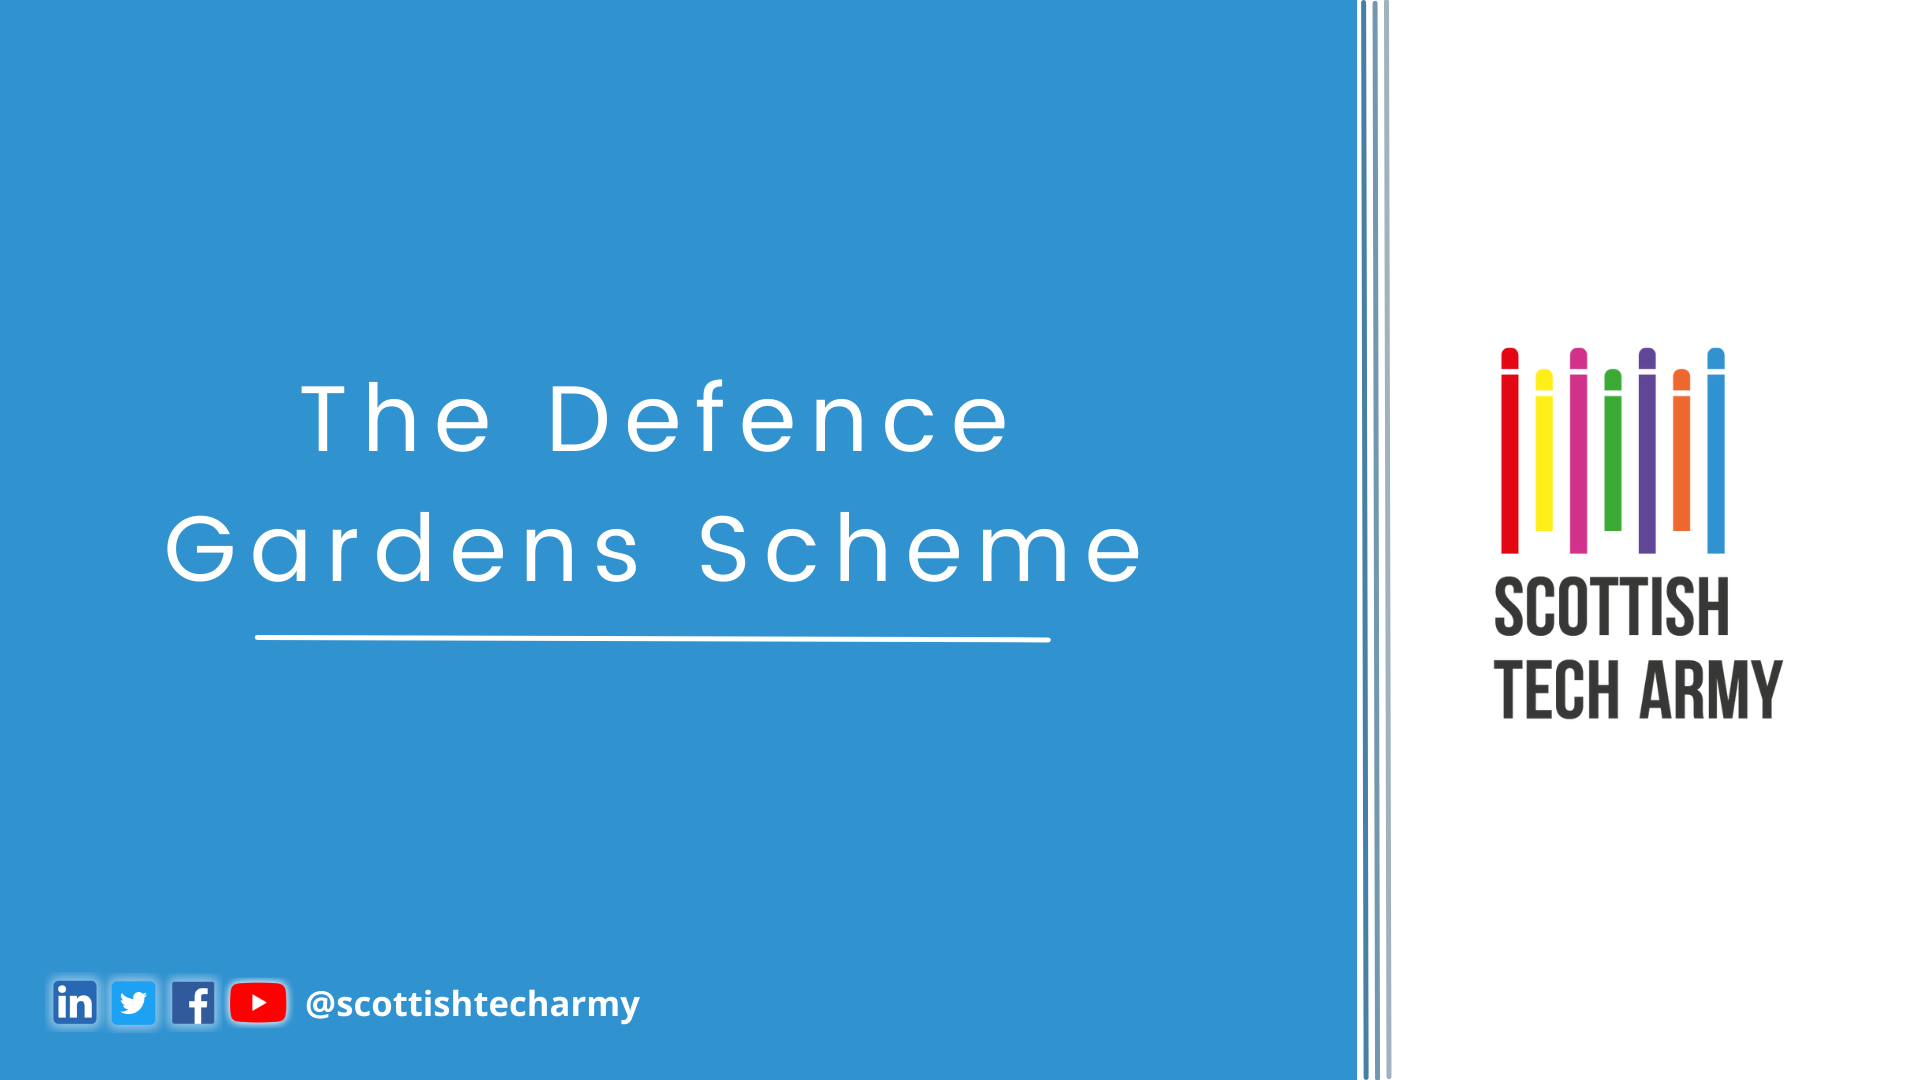 The Defence Gardens Scheme